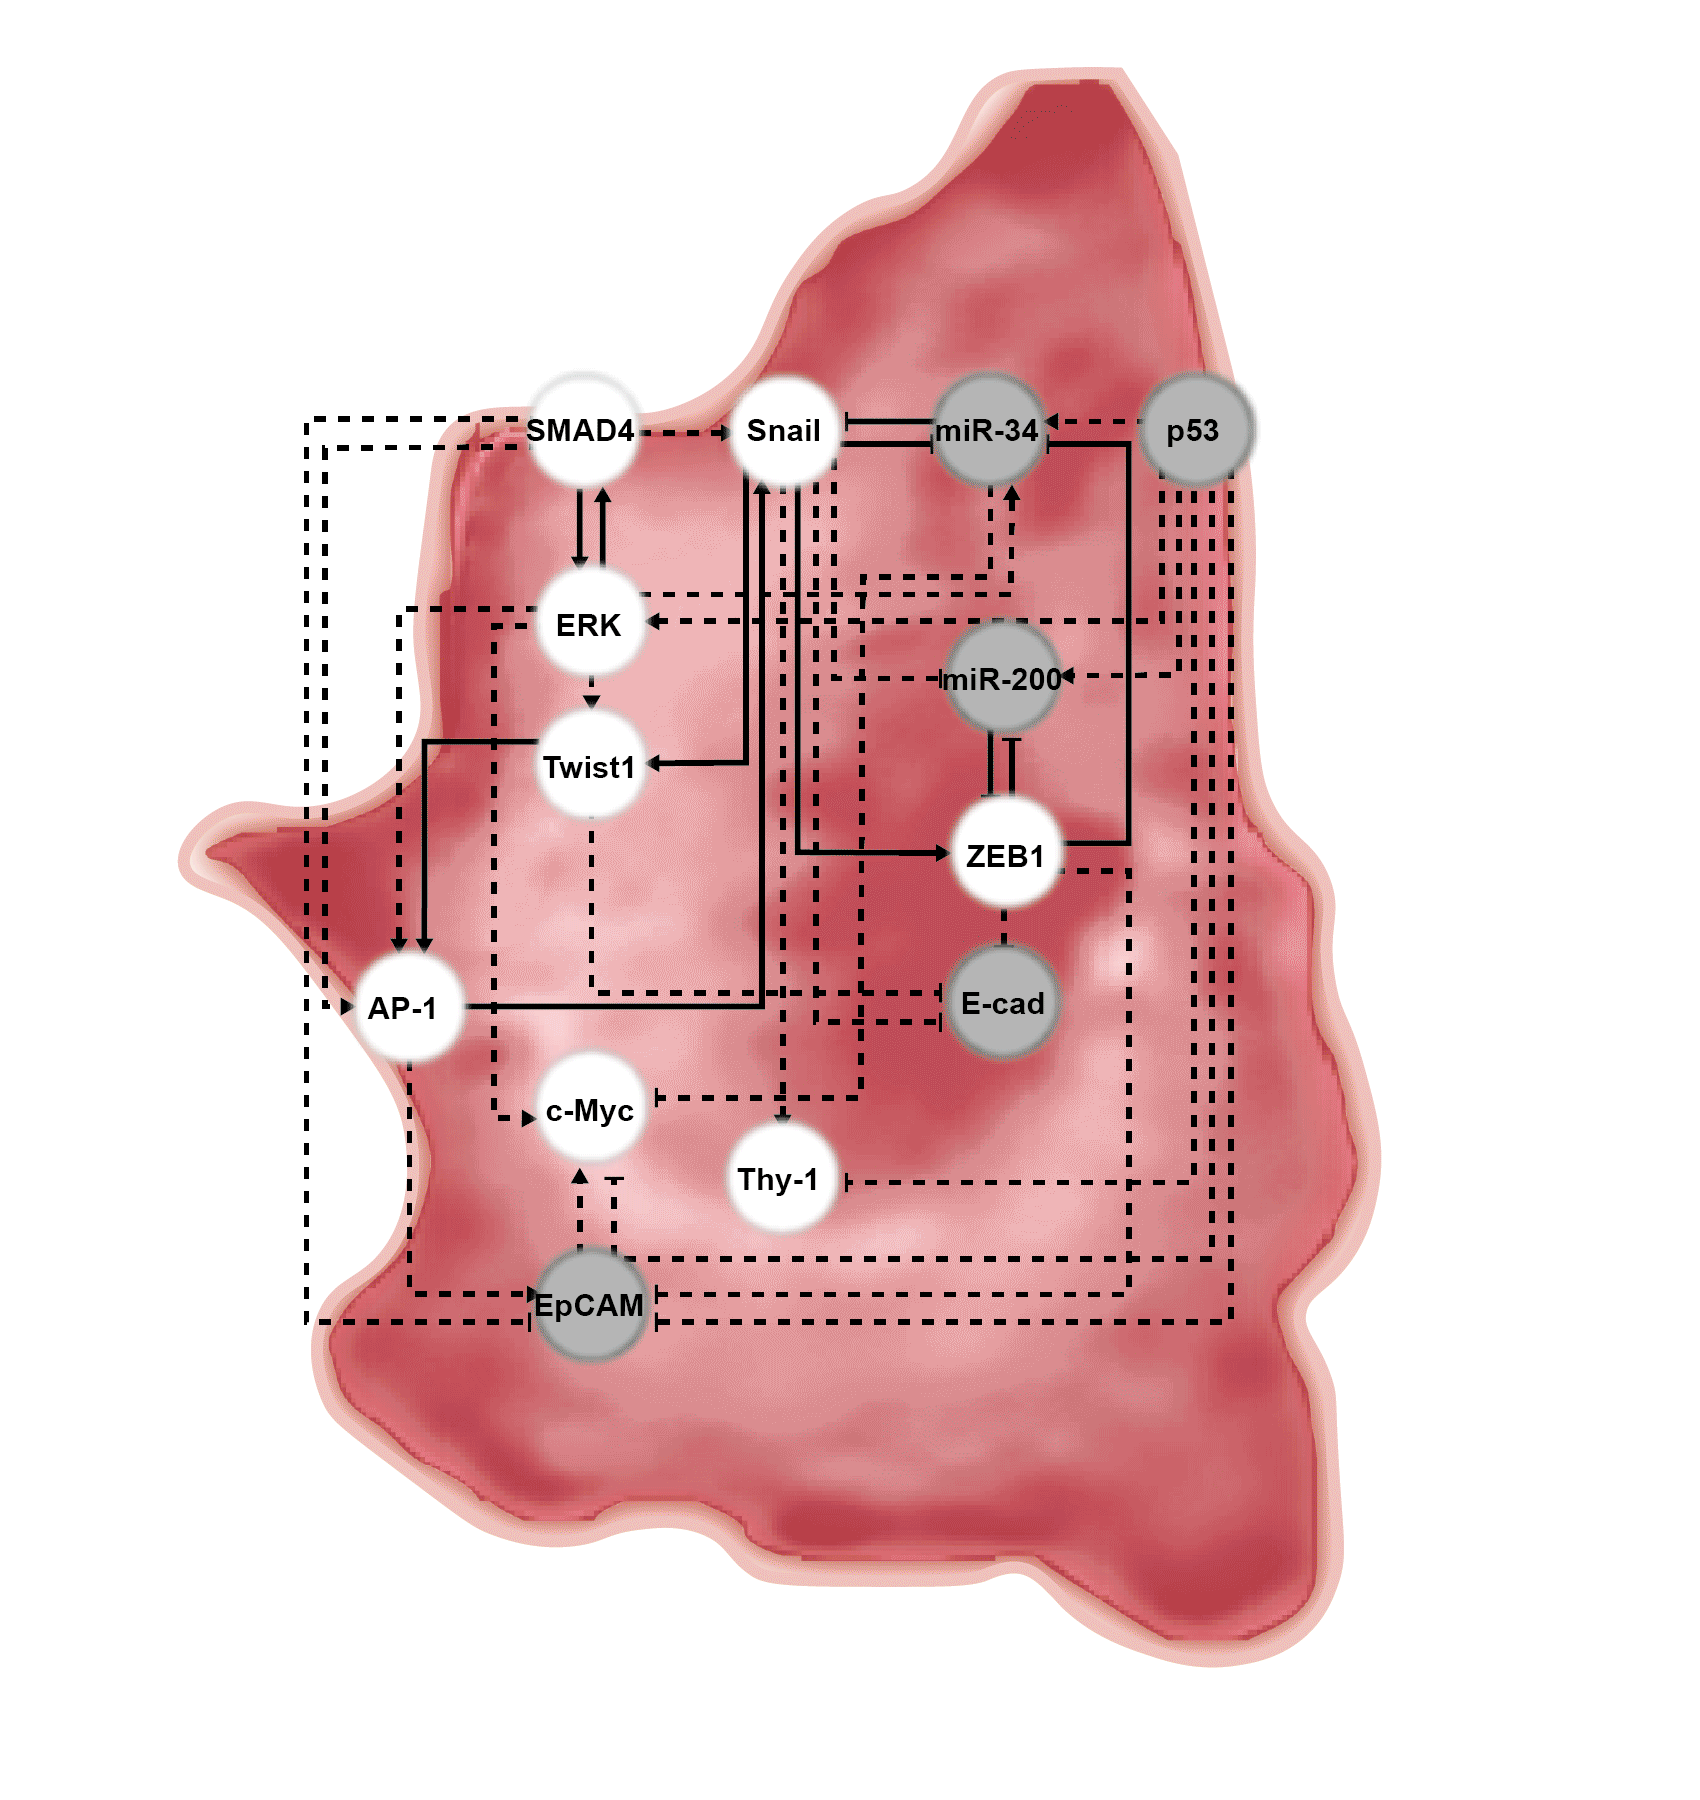 세포 내부에 표기된 네트워크구조는 연구를 통해 밝혀진 핵심 분자조절경로를 의미한다. 상기 빨간색은 중간엽세포로 전이가 가능한 세포상태이다. 알약으로 표기된 p53 노드를 단독 활성화시켰을 때 주황색인 EMT 하이브리드 세포로 상태가 변환되고, p53과 SMAD4 노드를 함께 조절했을 때, 파란색인 EMT 하이브리드 세포로 변환된다다 (파란색인 EMT 하이브리드 세포는 상피세포와 유사한 형태를 보이지만 여전히 항암 화학요법 치료에 내성을 가지고 있는 세포). 최종적으로 발굴된 핵심 분자 타깃 p53, SMAD4, ERK을 모두 조절했을 때, 초록색인 전이가 되지 않고 항암 화학요법 치료가 잘 되는 상피세포로 변하게 된다. 그림제공=카이스트